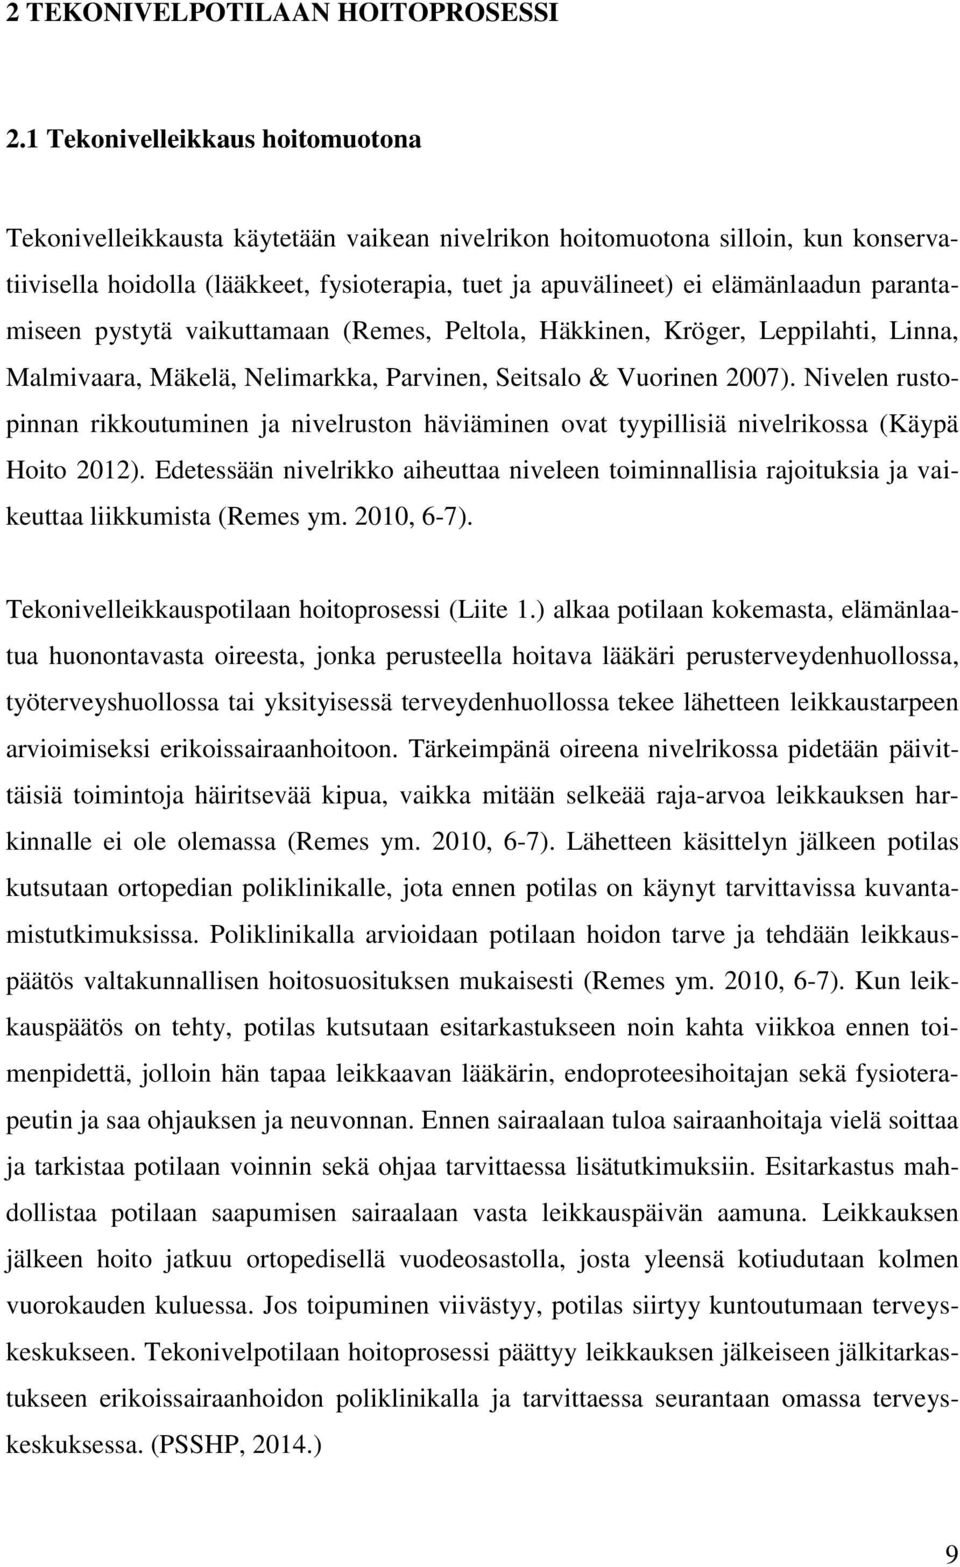 parantamiseen pystytä vaikuttamaan (Remes, Peltola, Häkkinen, Kröger, Leppilahti, Linna, Malmivaara, Mäkelä, Nelimarkka, Parvinen, Seitsalo & Vuorinen 2007).